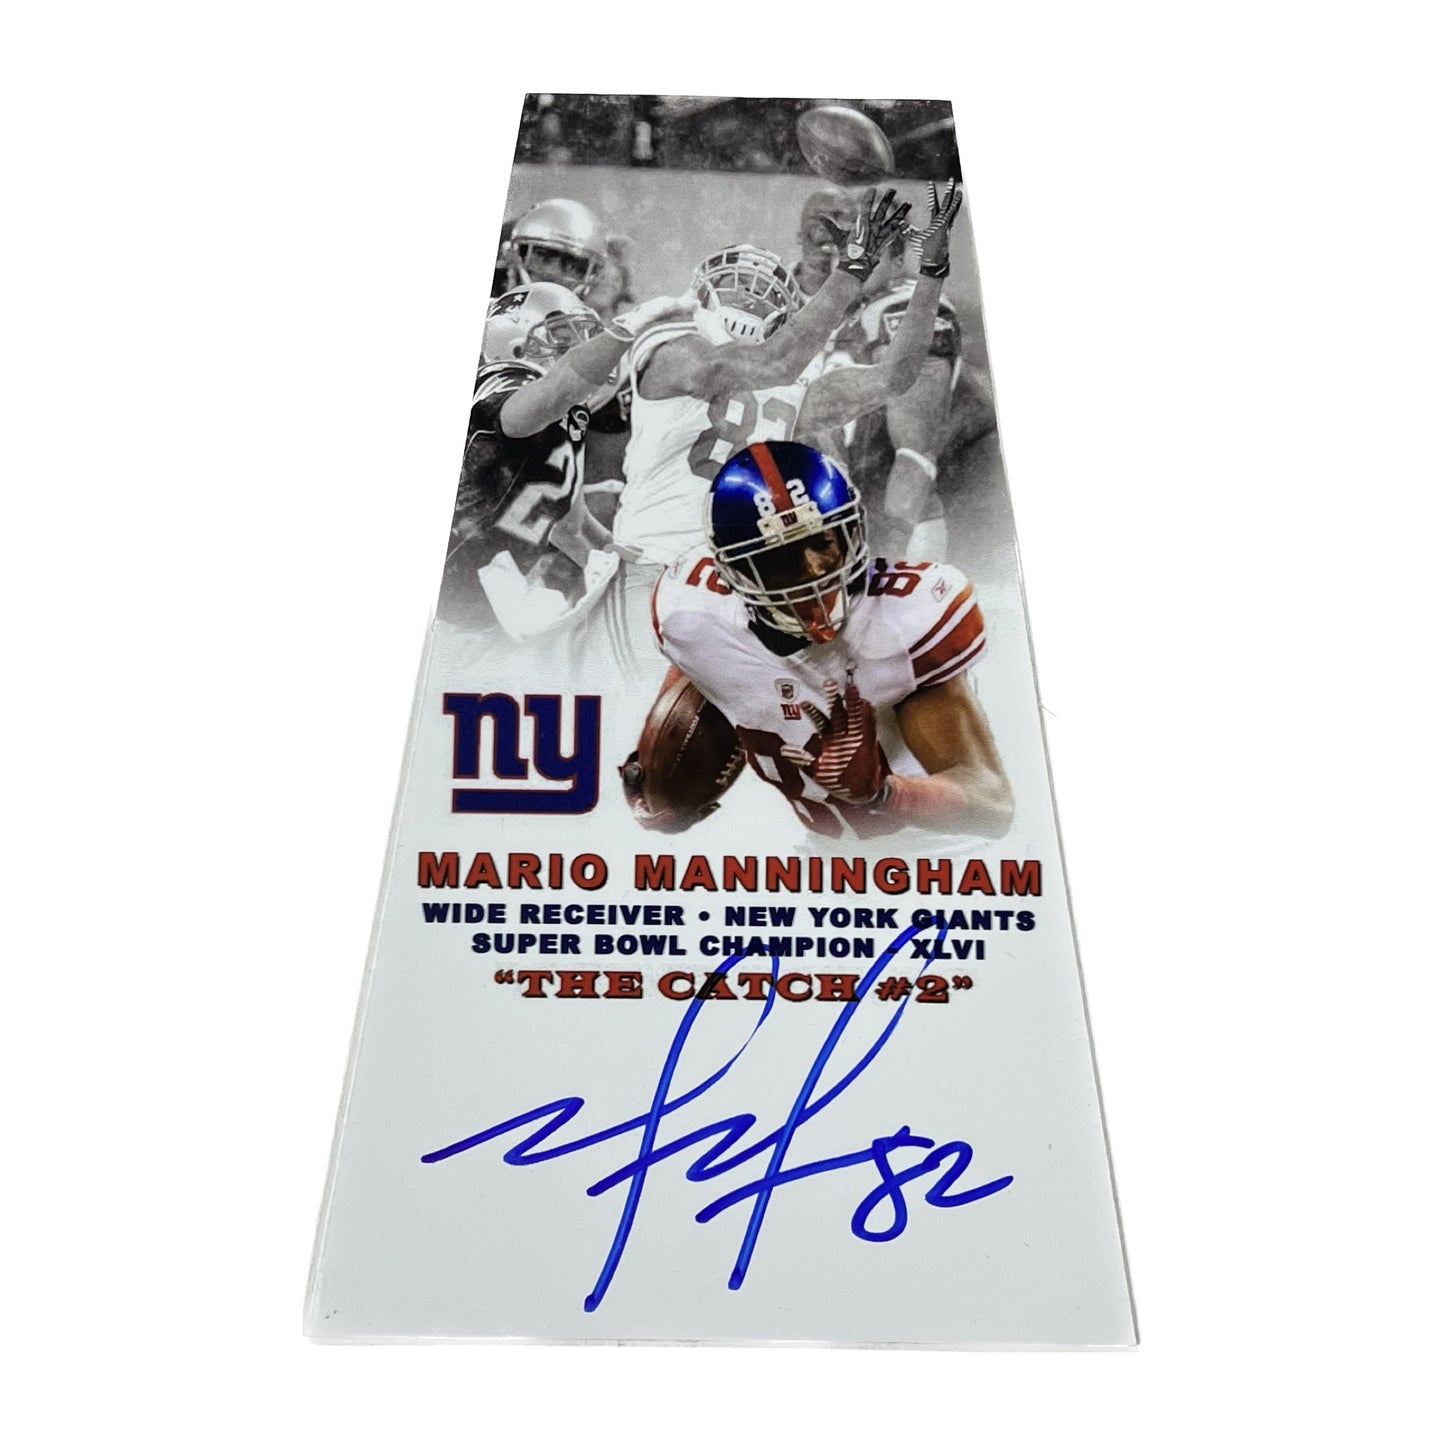 Mario Manningham Autographed New York Giants Super Bowl Trophy Plaque